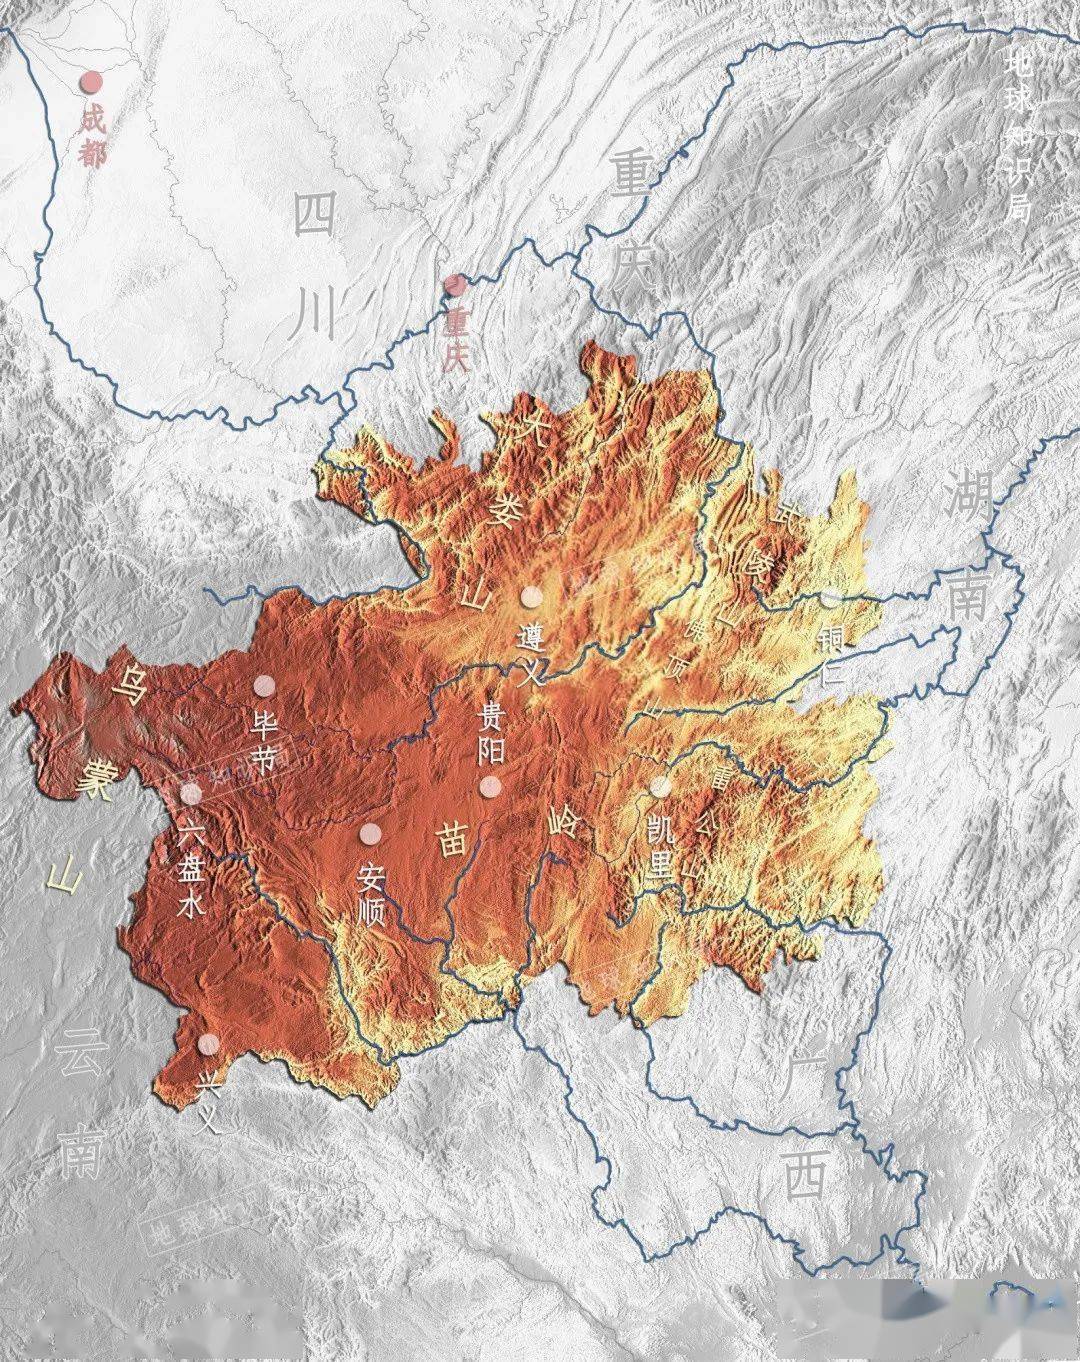 贵州地形特点图片